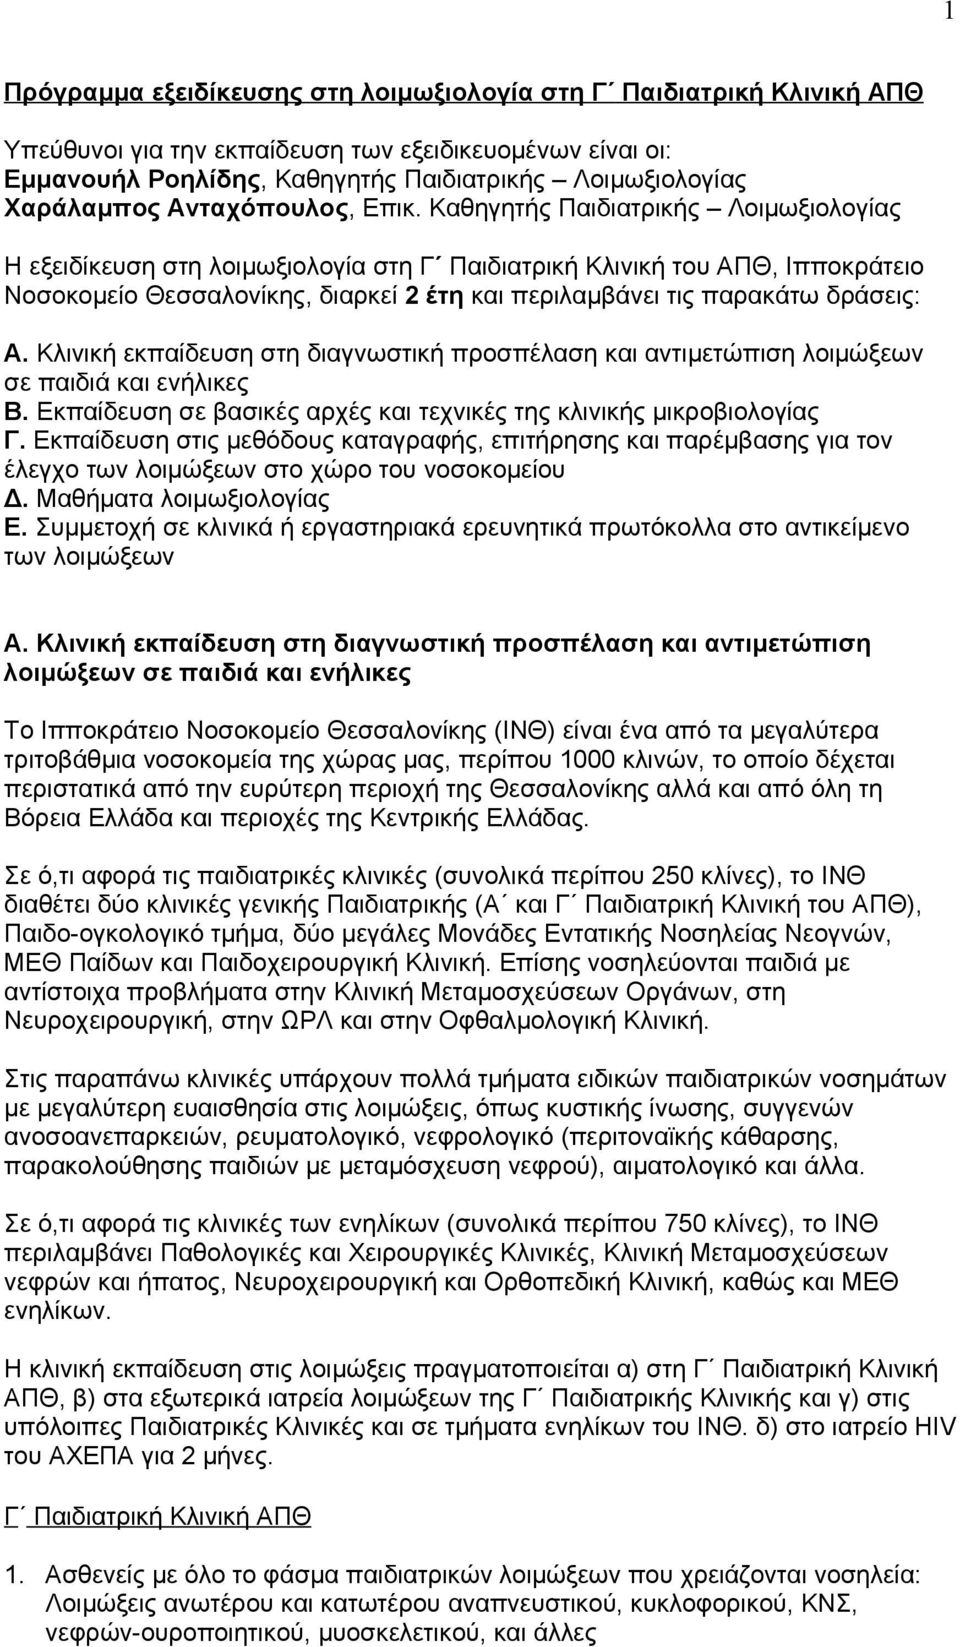 Καθηγητής Παιδιατρικής Λοιμωξιολογίας Η εξειδίκευση στη λοιμωξιολογία στη Γʹ Παιδιατρική Κλινική του ΑΠΘ, Ιπποκράτειο Νοσοκομείο Θεσσαλονίκης, διαρκεί 2 έτη και περιλαμβάνει τις παρακάτω δράσεις: Α.